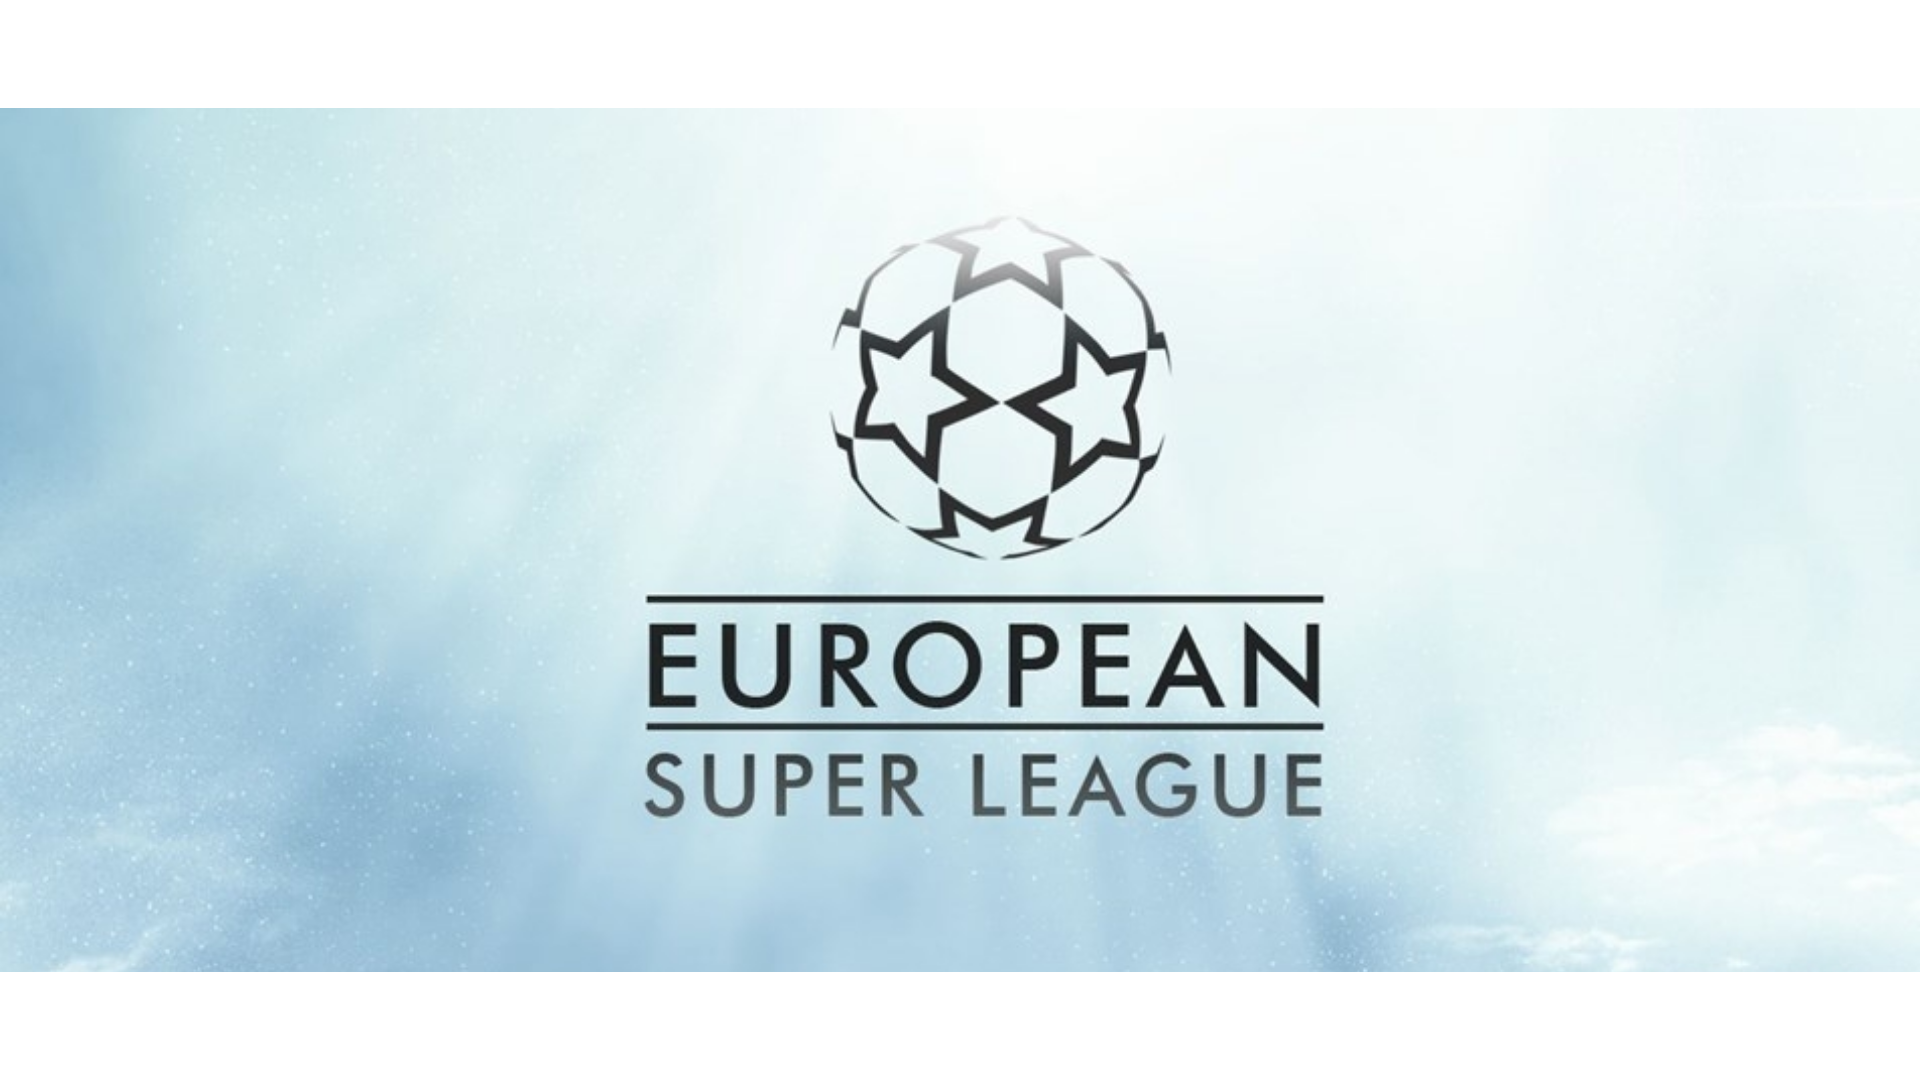 Avrup Süper Ligi logo görseli.